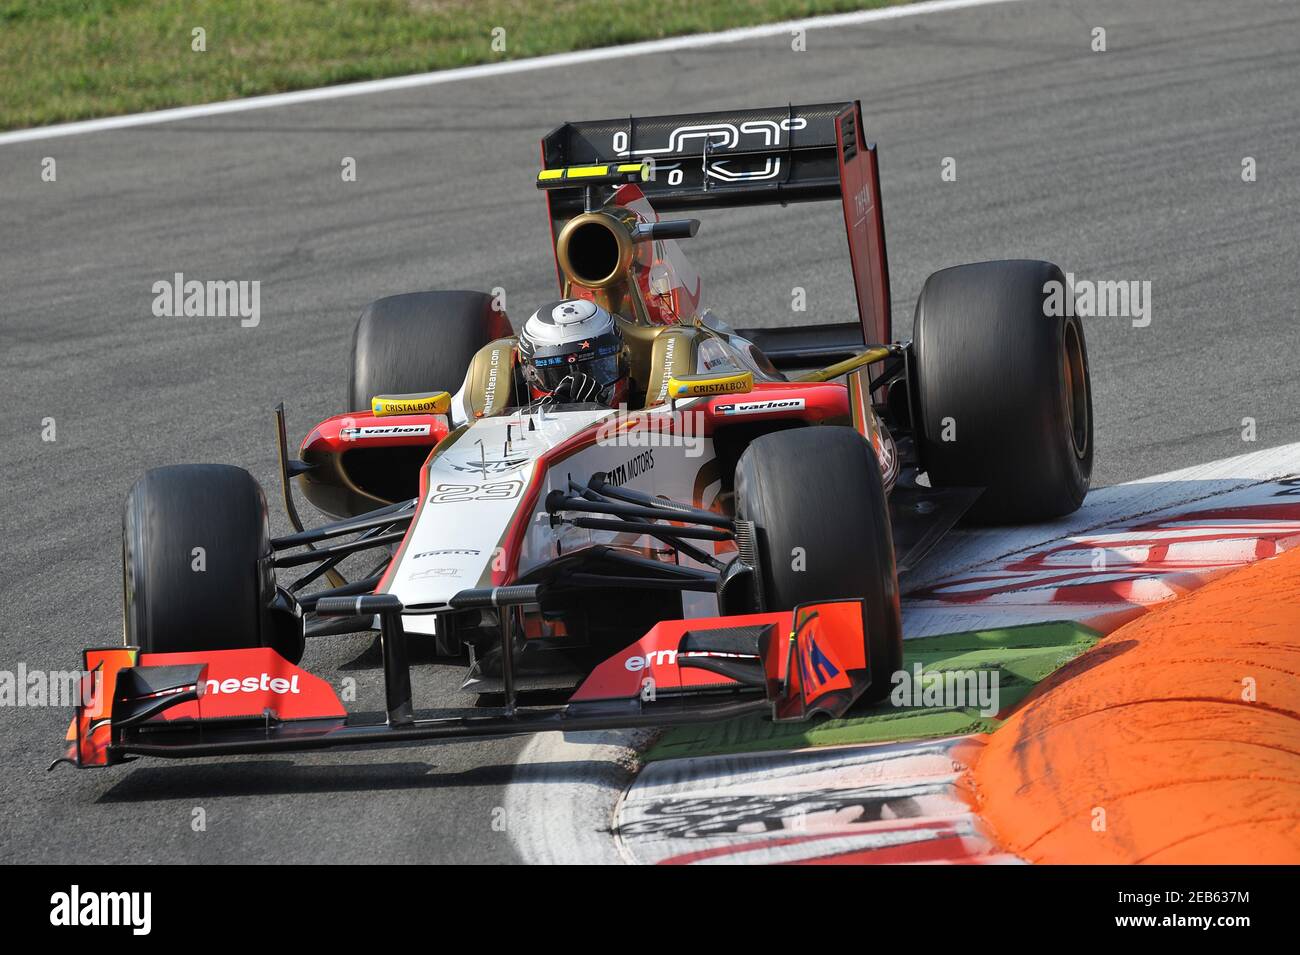 Fórmula uno - F1 - Gran Premio de Italia 2012 - Autodromo Nazionale Monza,  Monza, Italia - 7/9/12